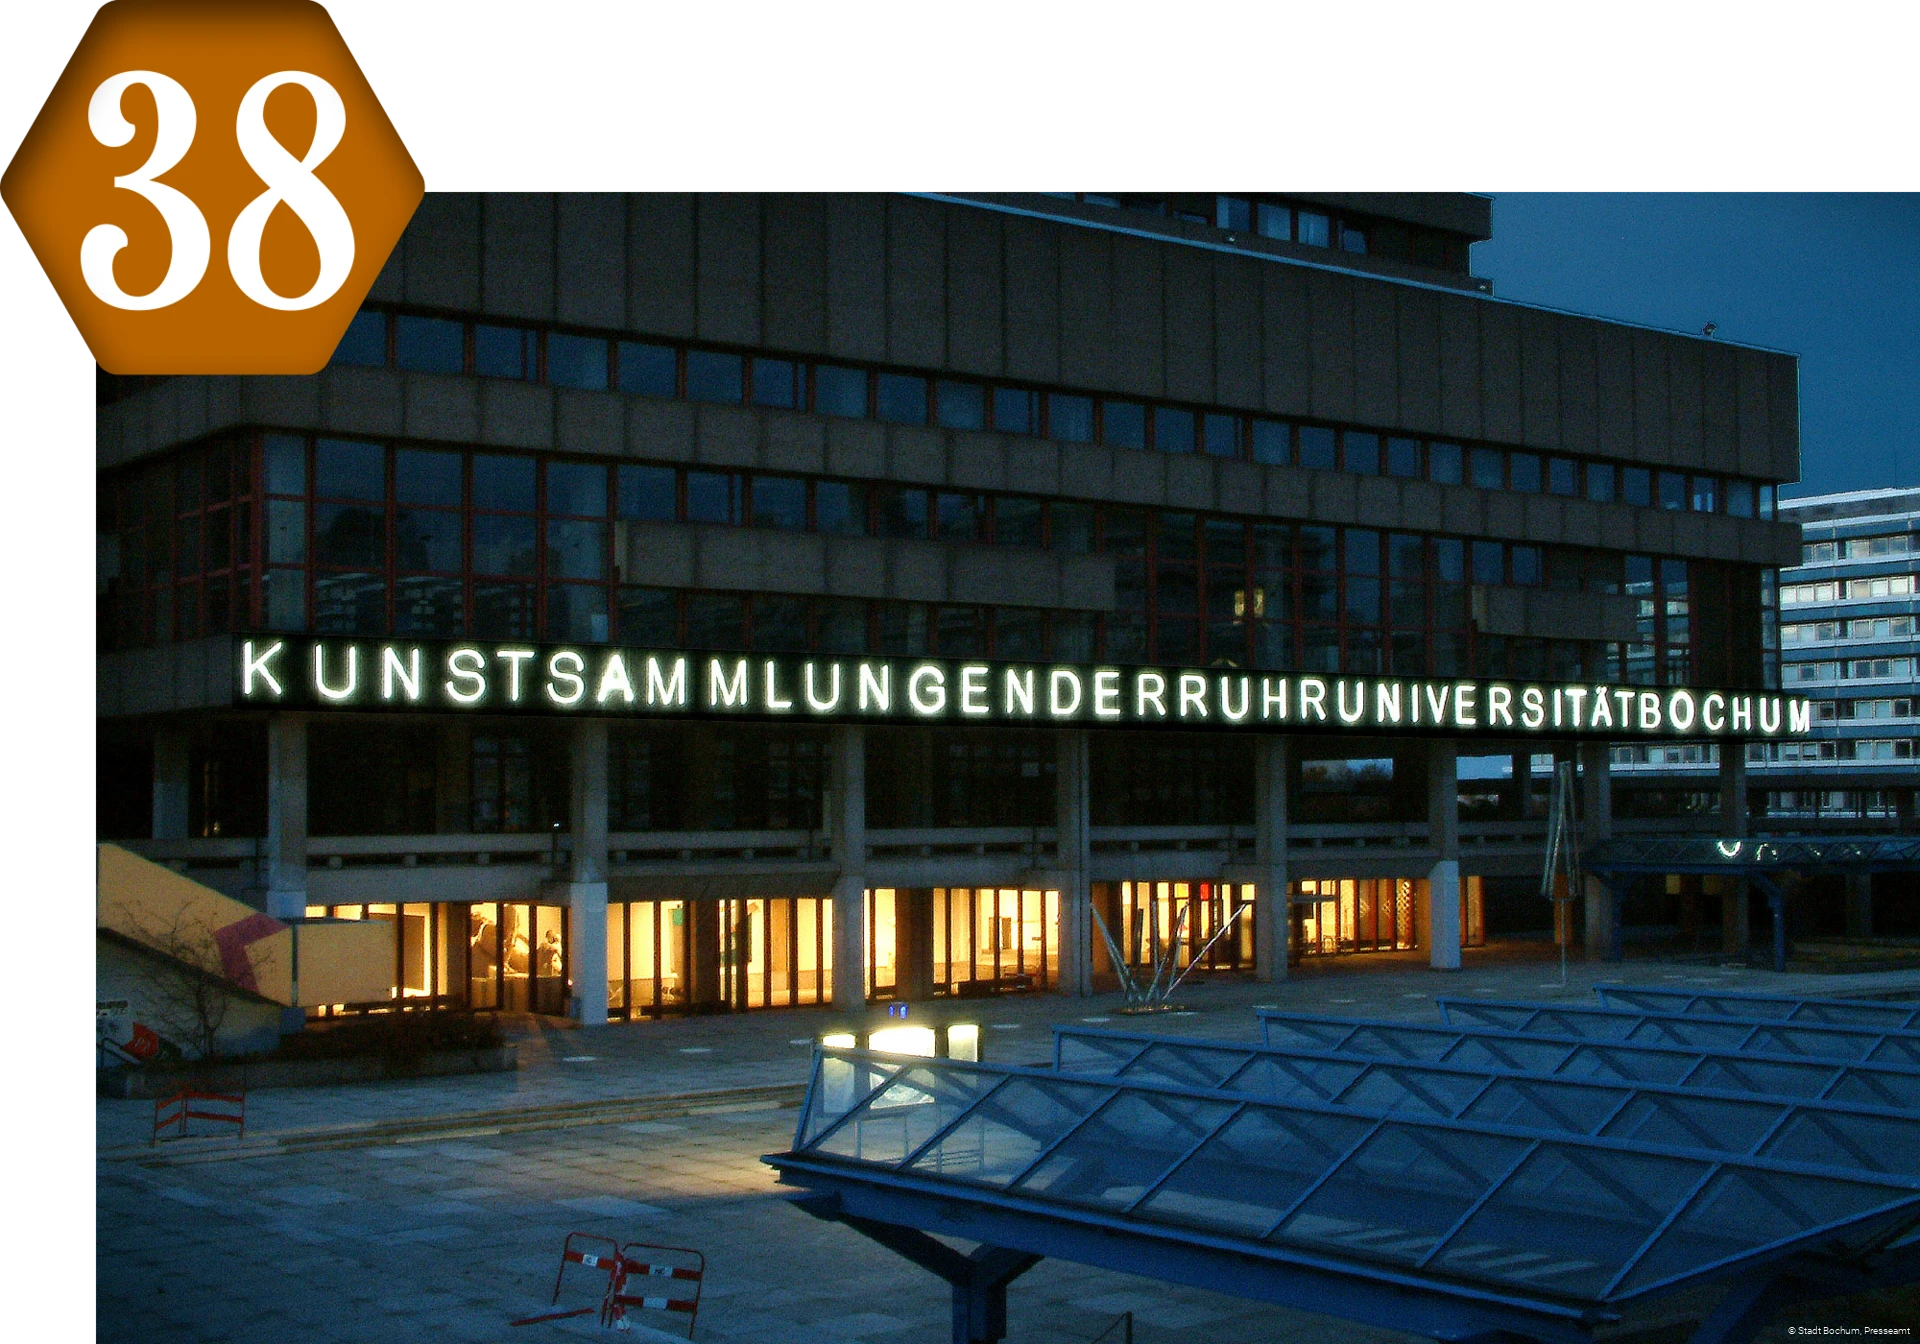 38_Kunstsammlung_Ruhruniversität.png